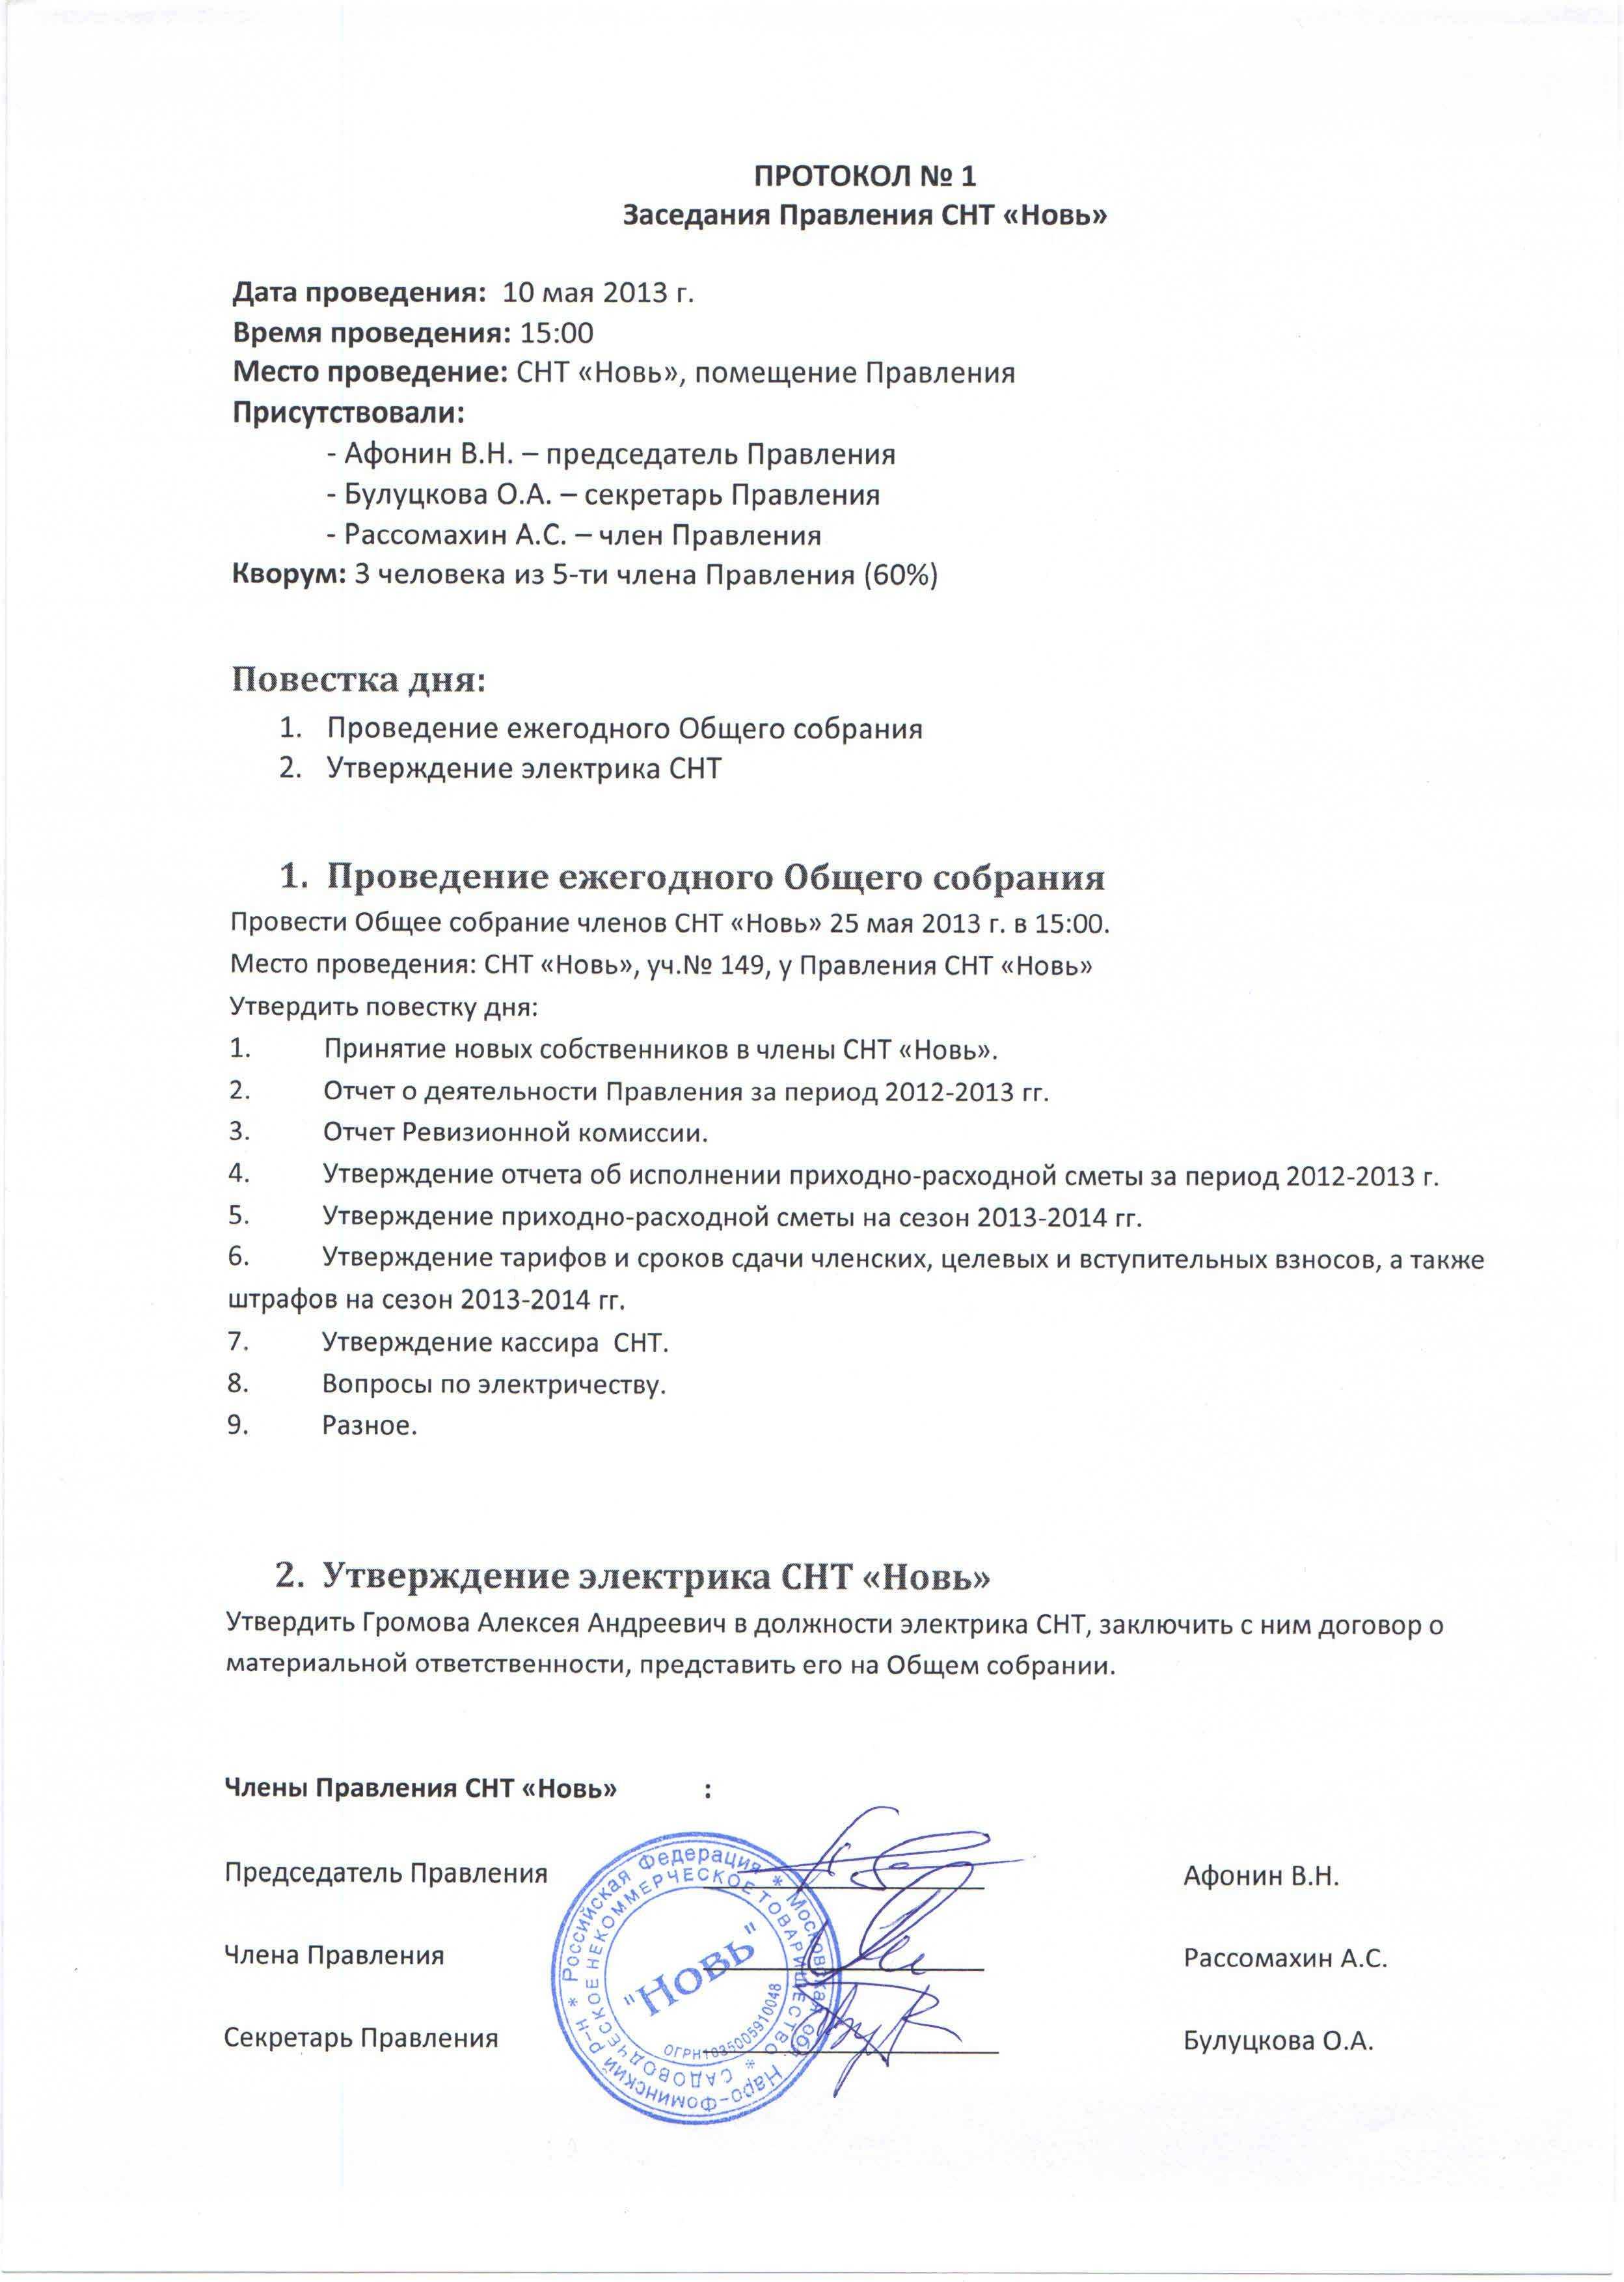 Протокол общего собрания (образец). как составляется протокол общего собрания? :: businessman.ru